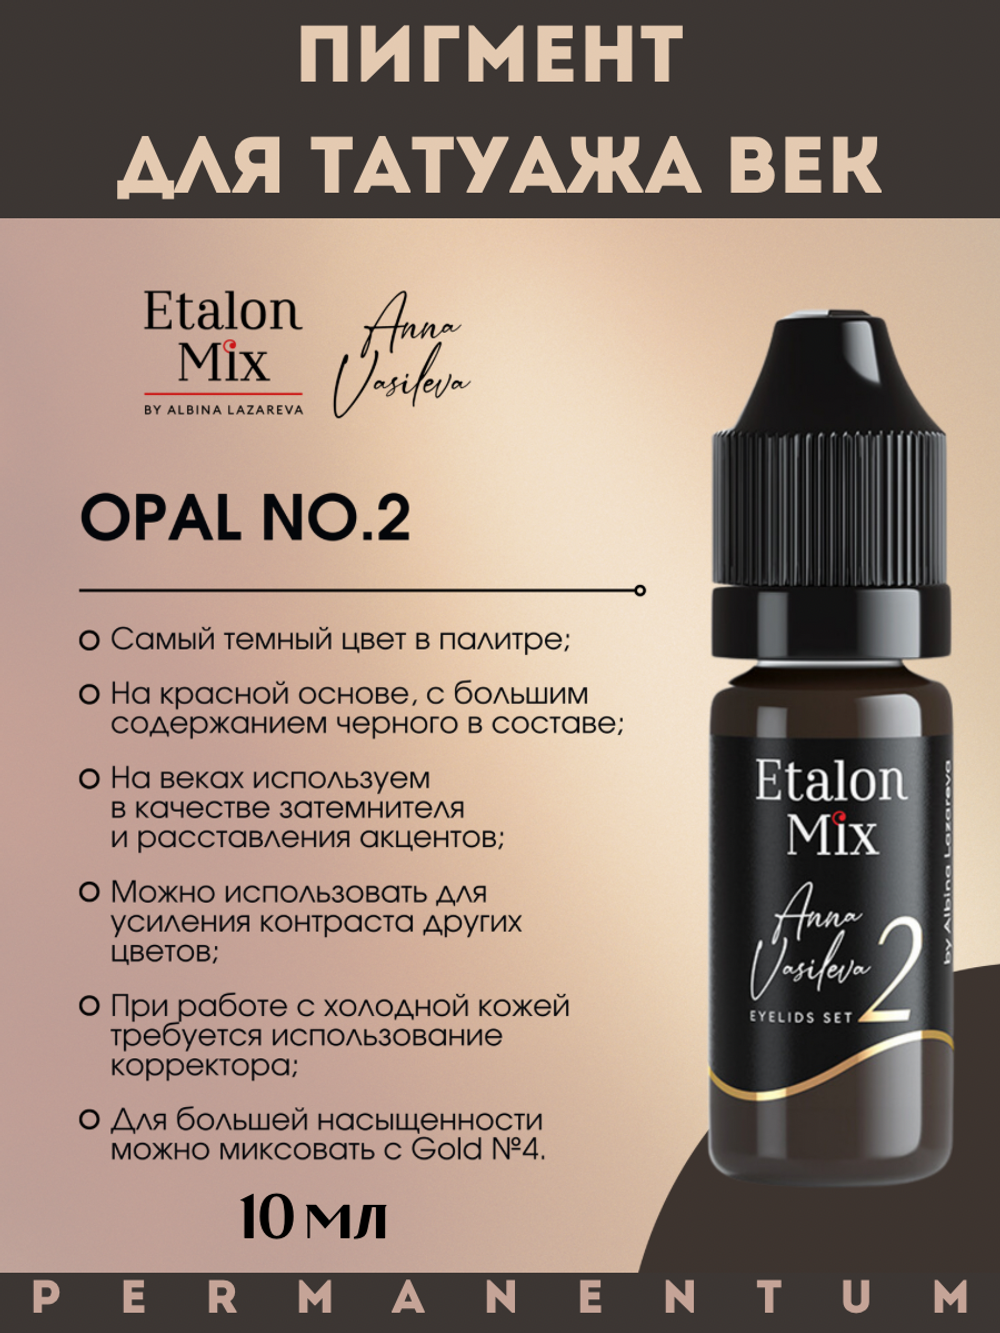 Пигмент для век Etalon Mix OPAL №2 от Анны Васильевой 10 мл